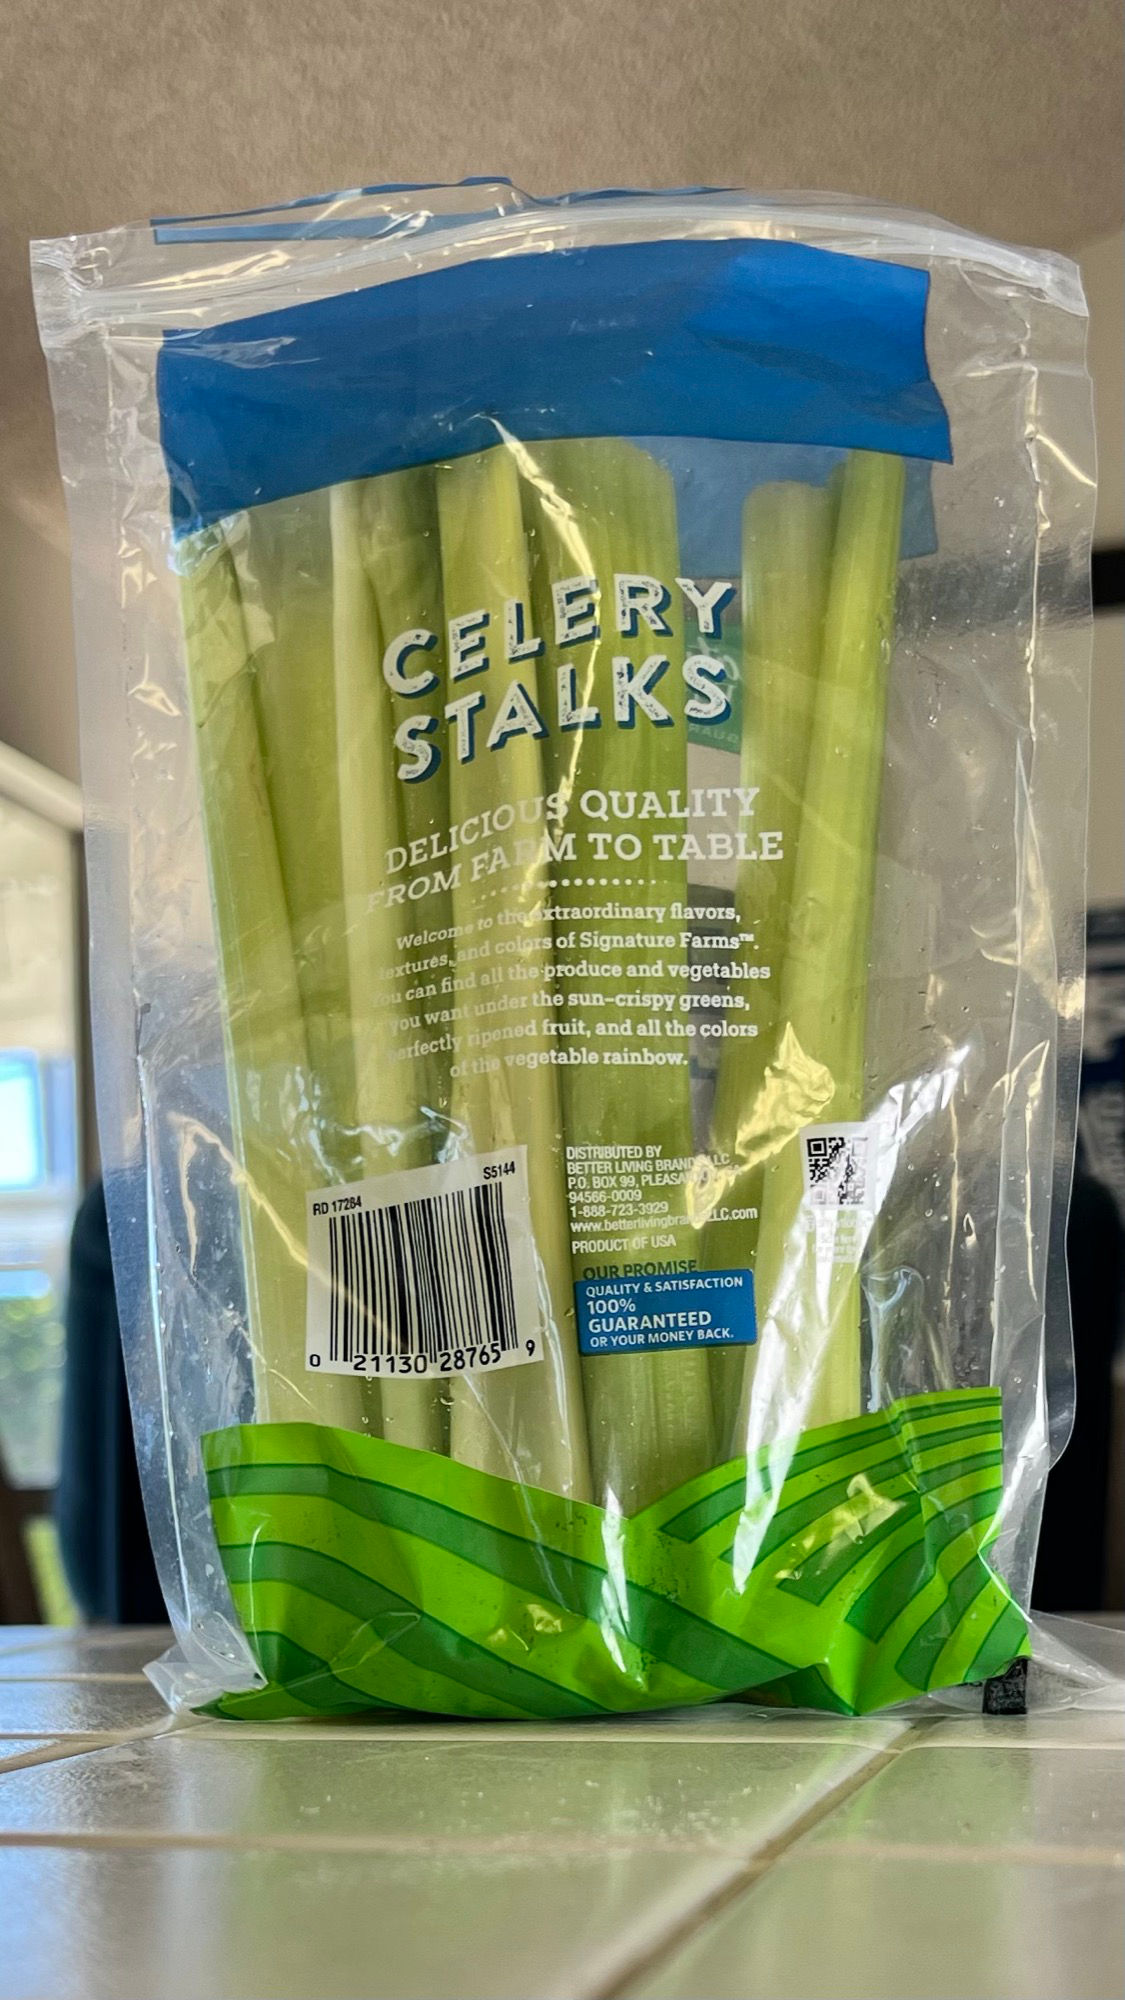 Celery Stalks Signature Farms